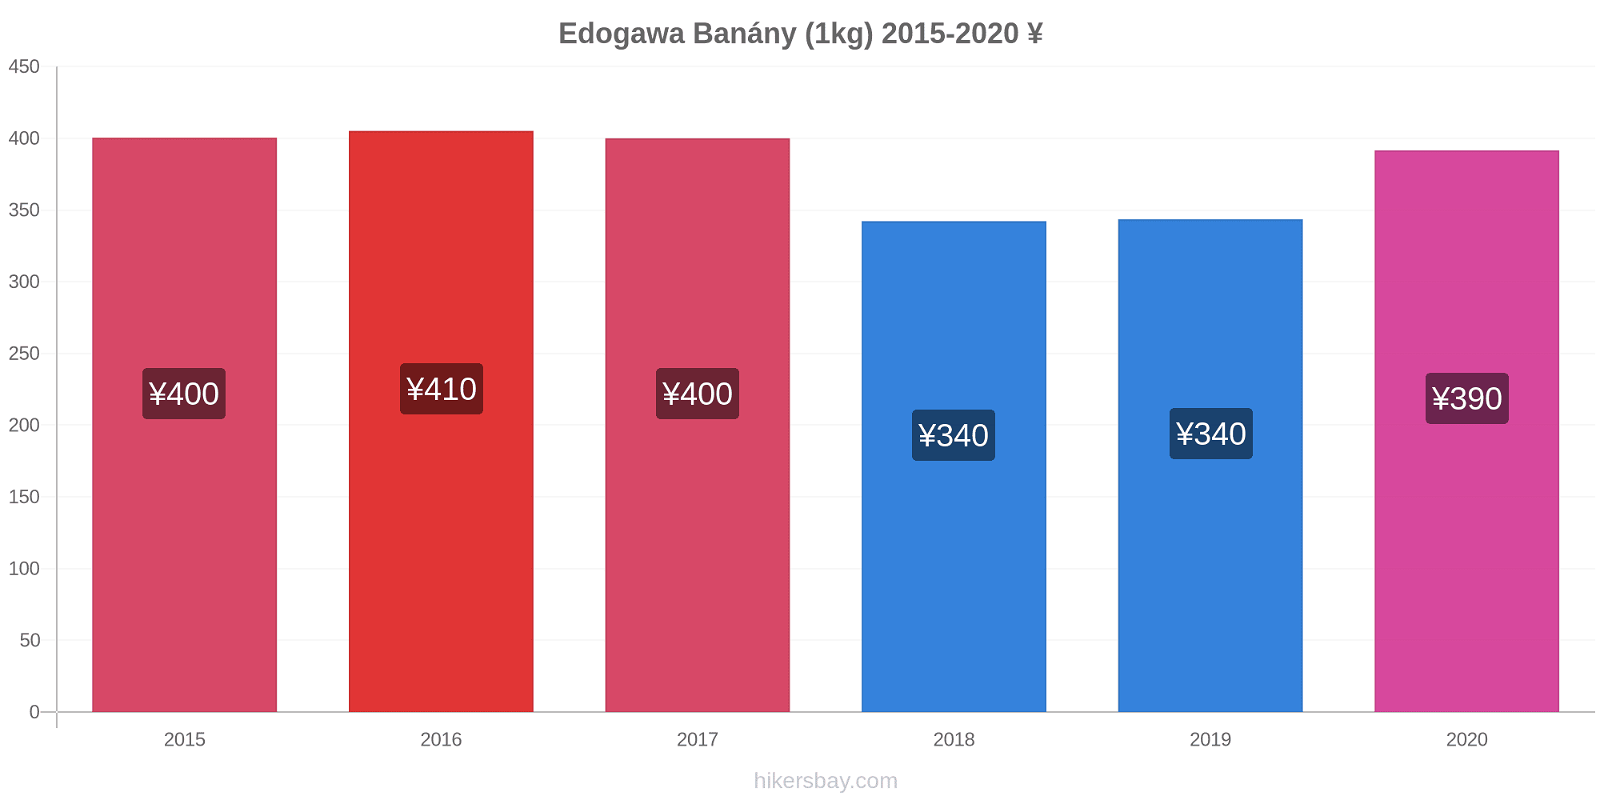 Edogawa změny cen Banány (1kg) hikersbay.com